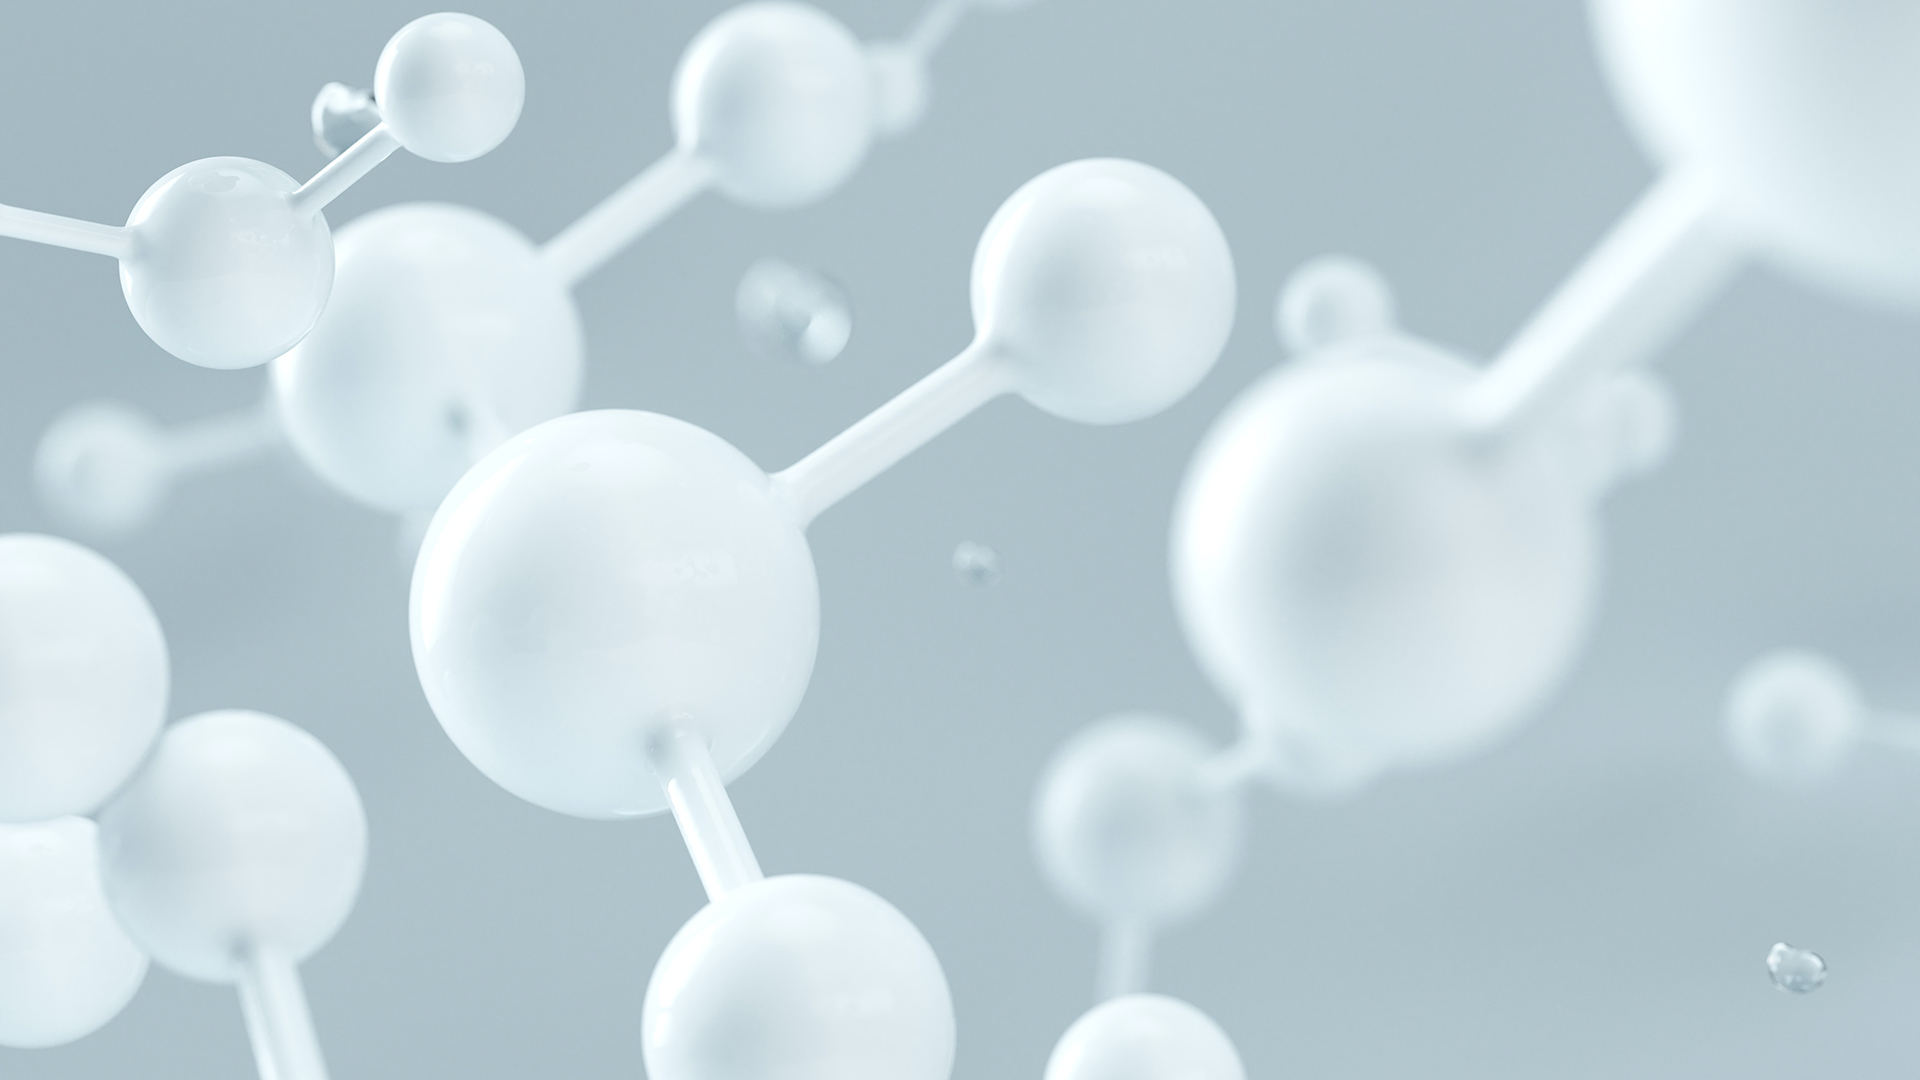 Immagine di molecole di nanomateriali